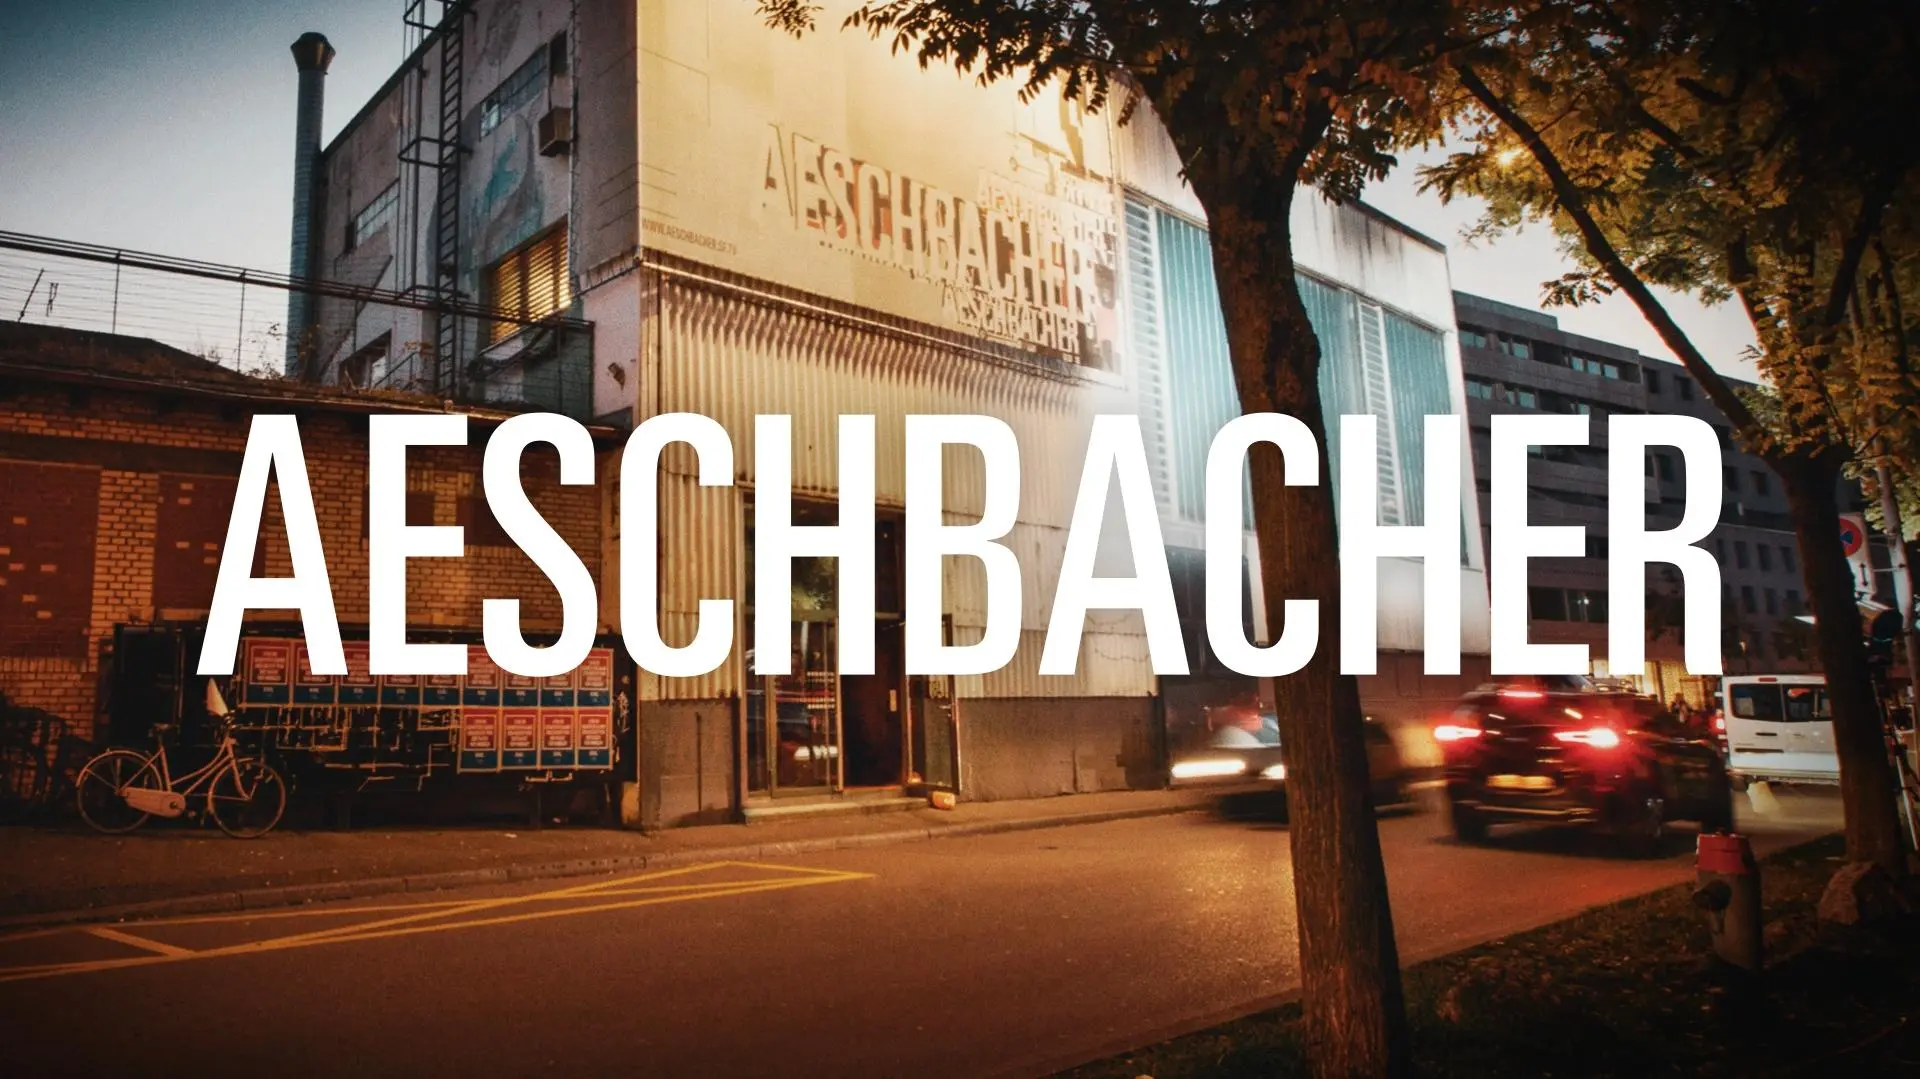 Aeschbacher_peliplat